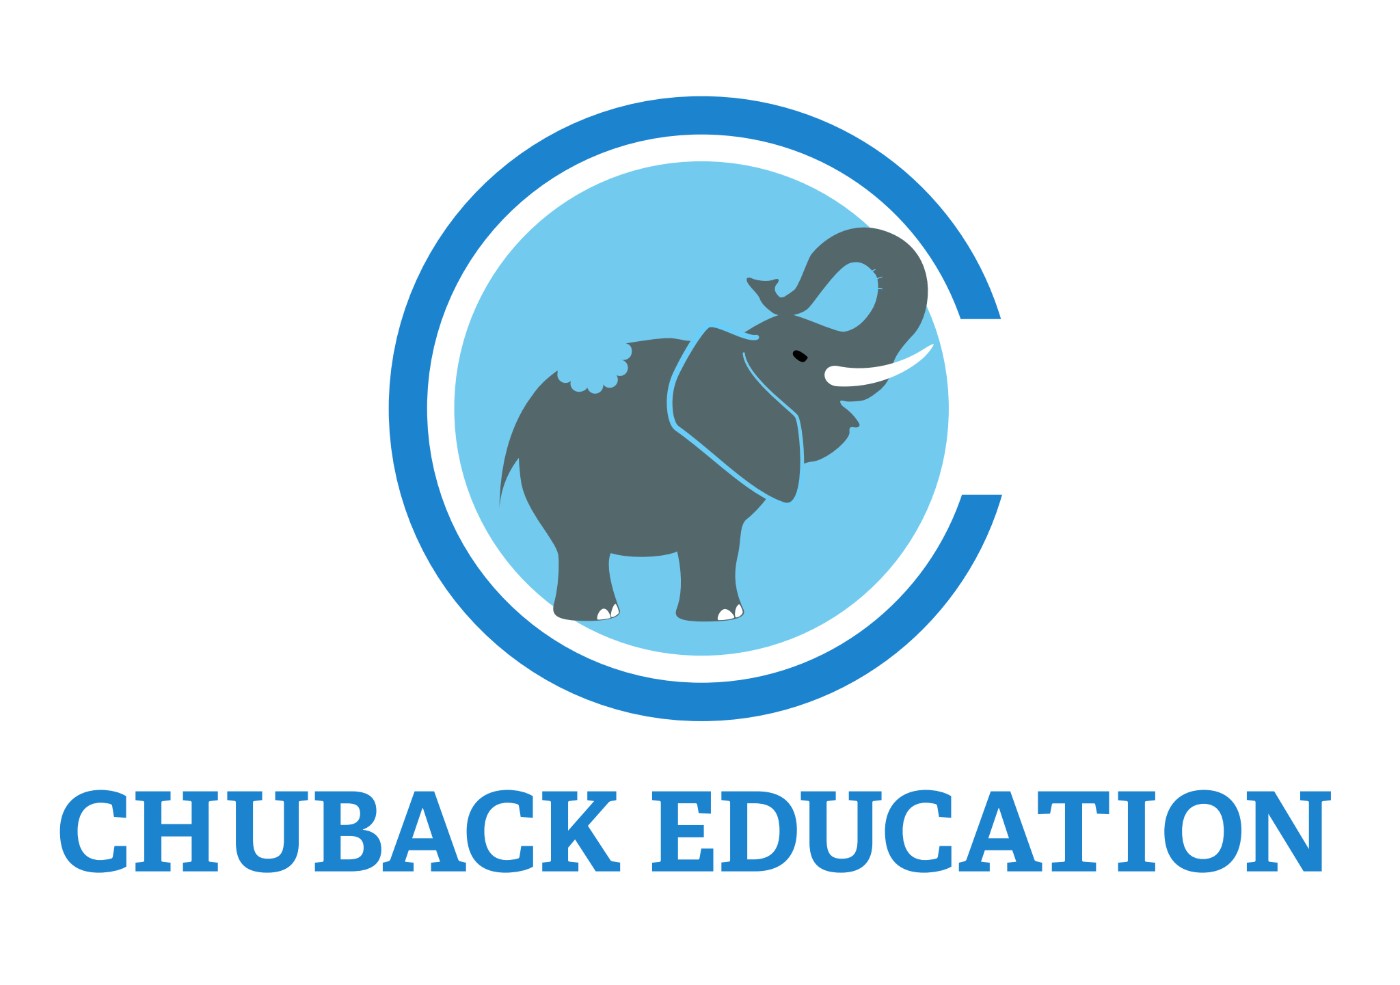 Chuback education Logo